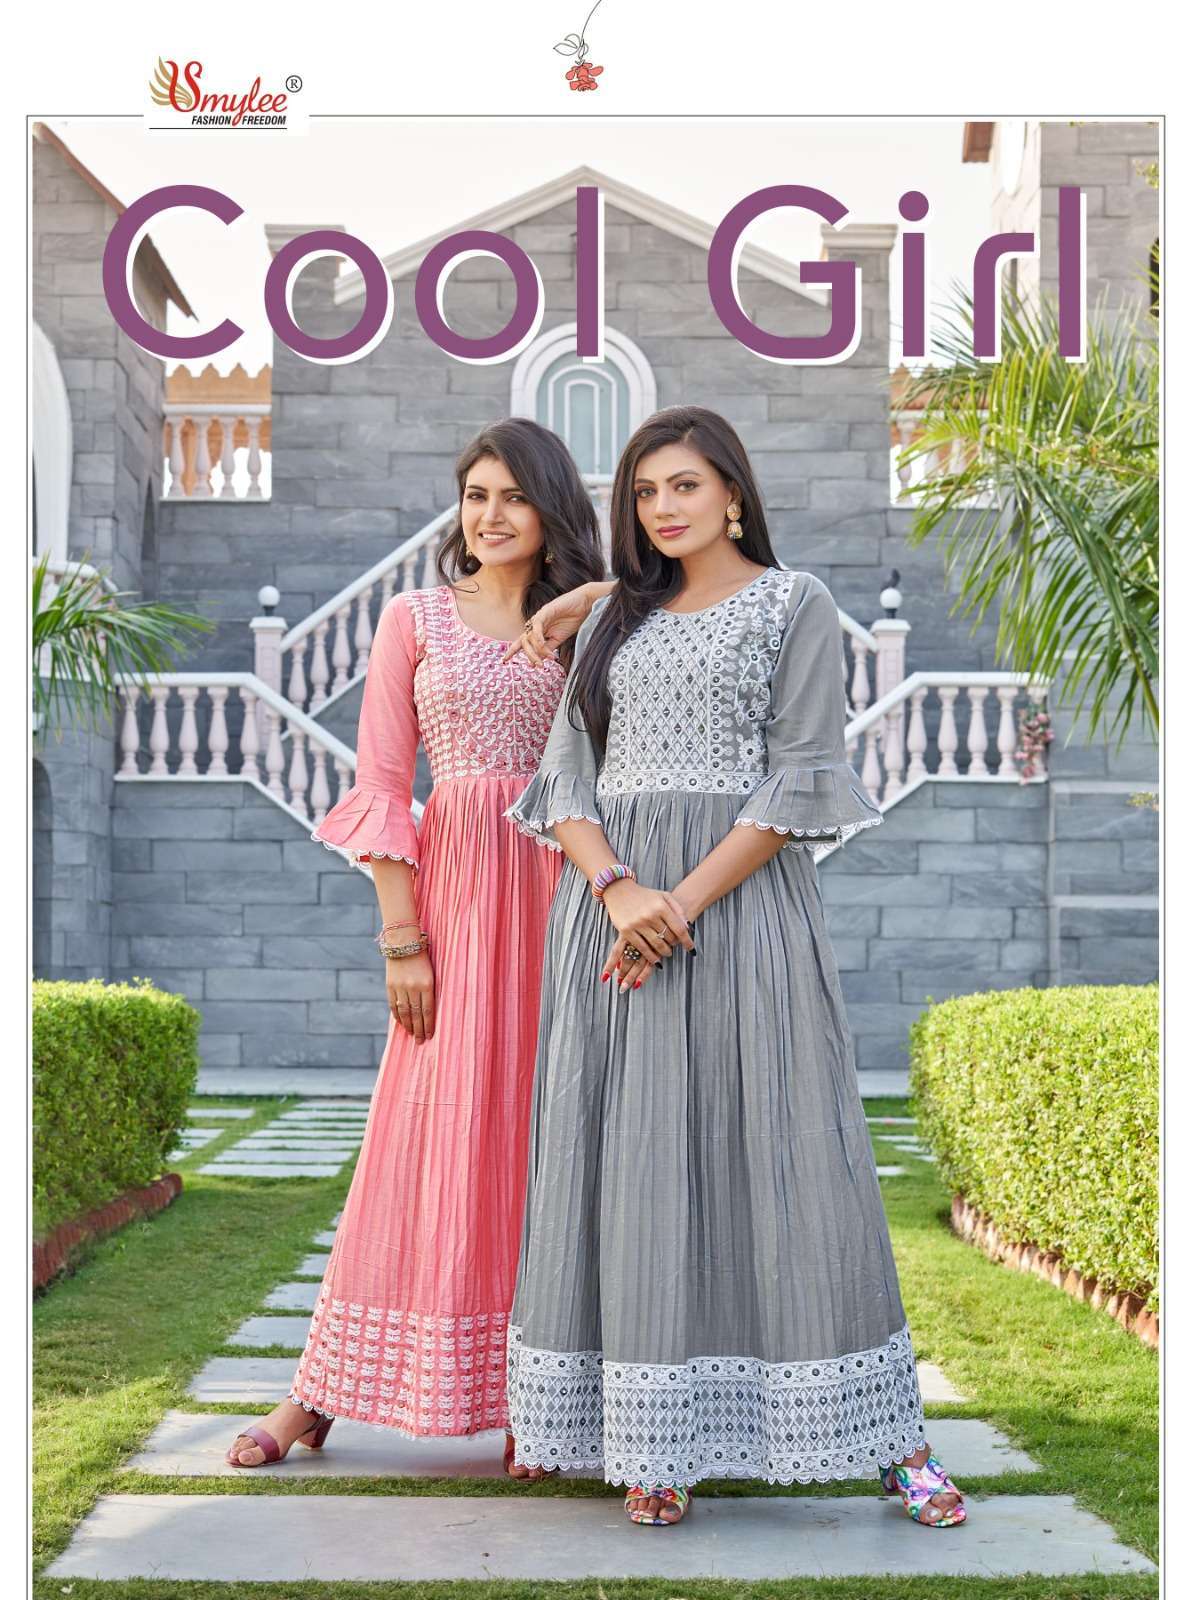 smylee cool girl series 1001-1006 heavy cotton kurti 